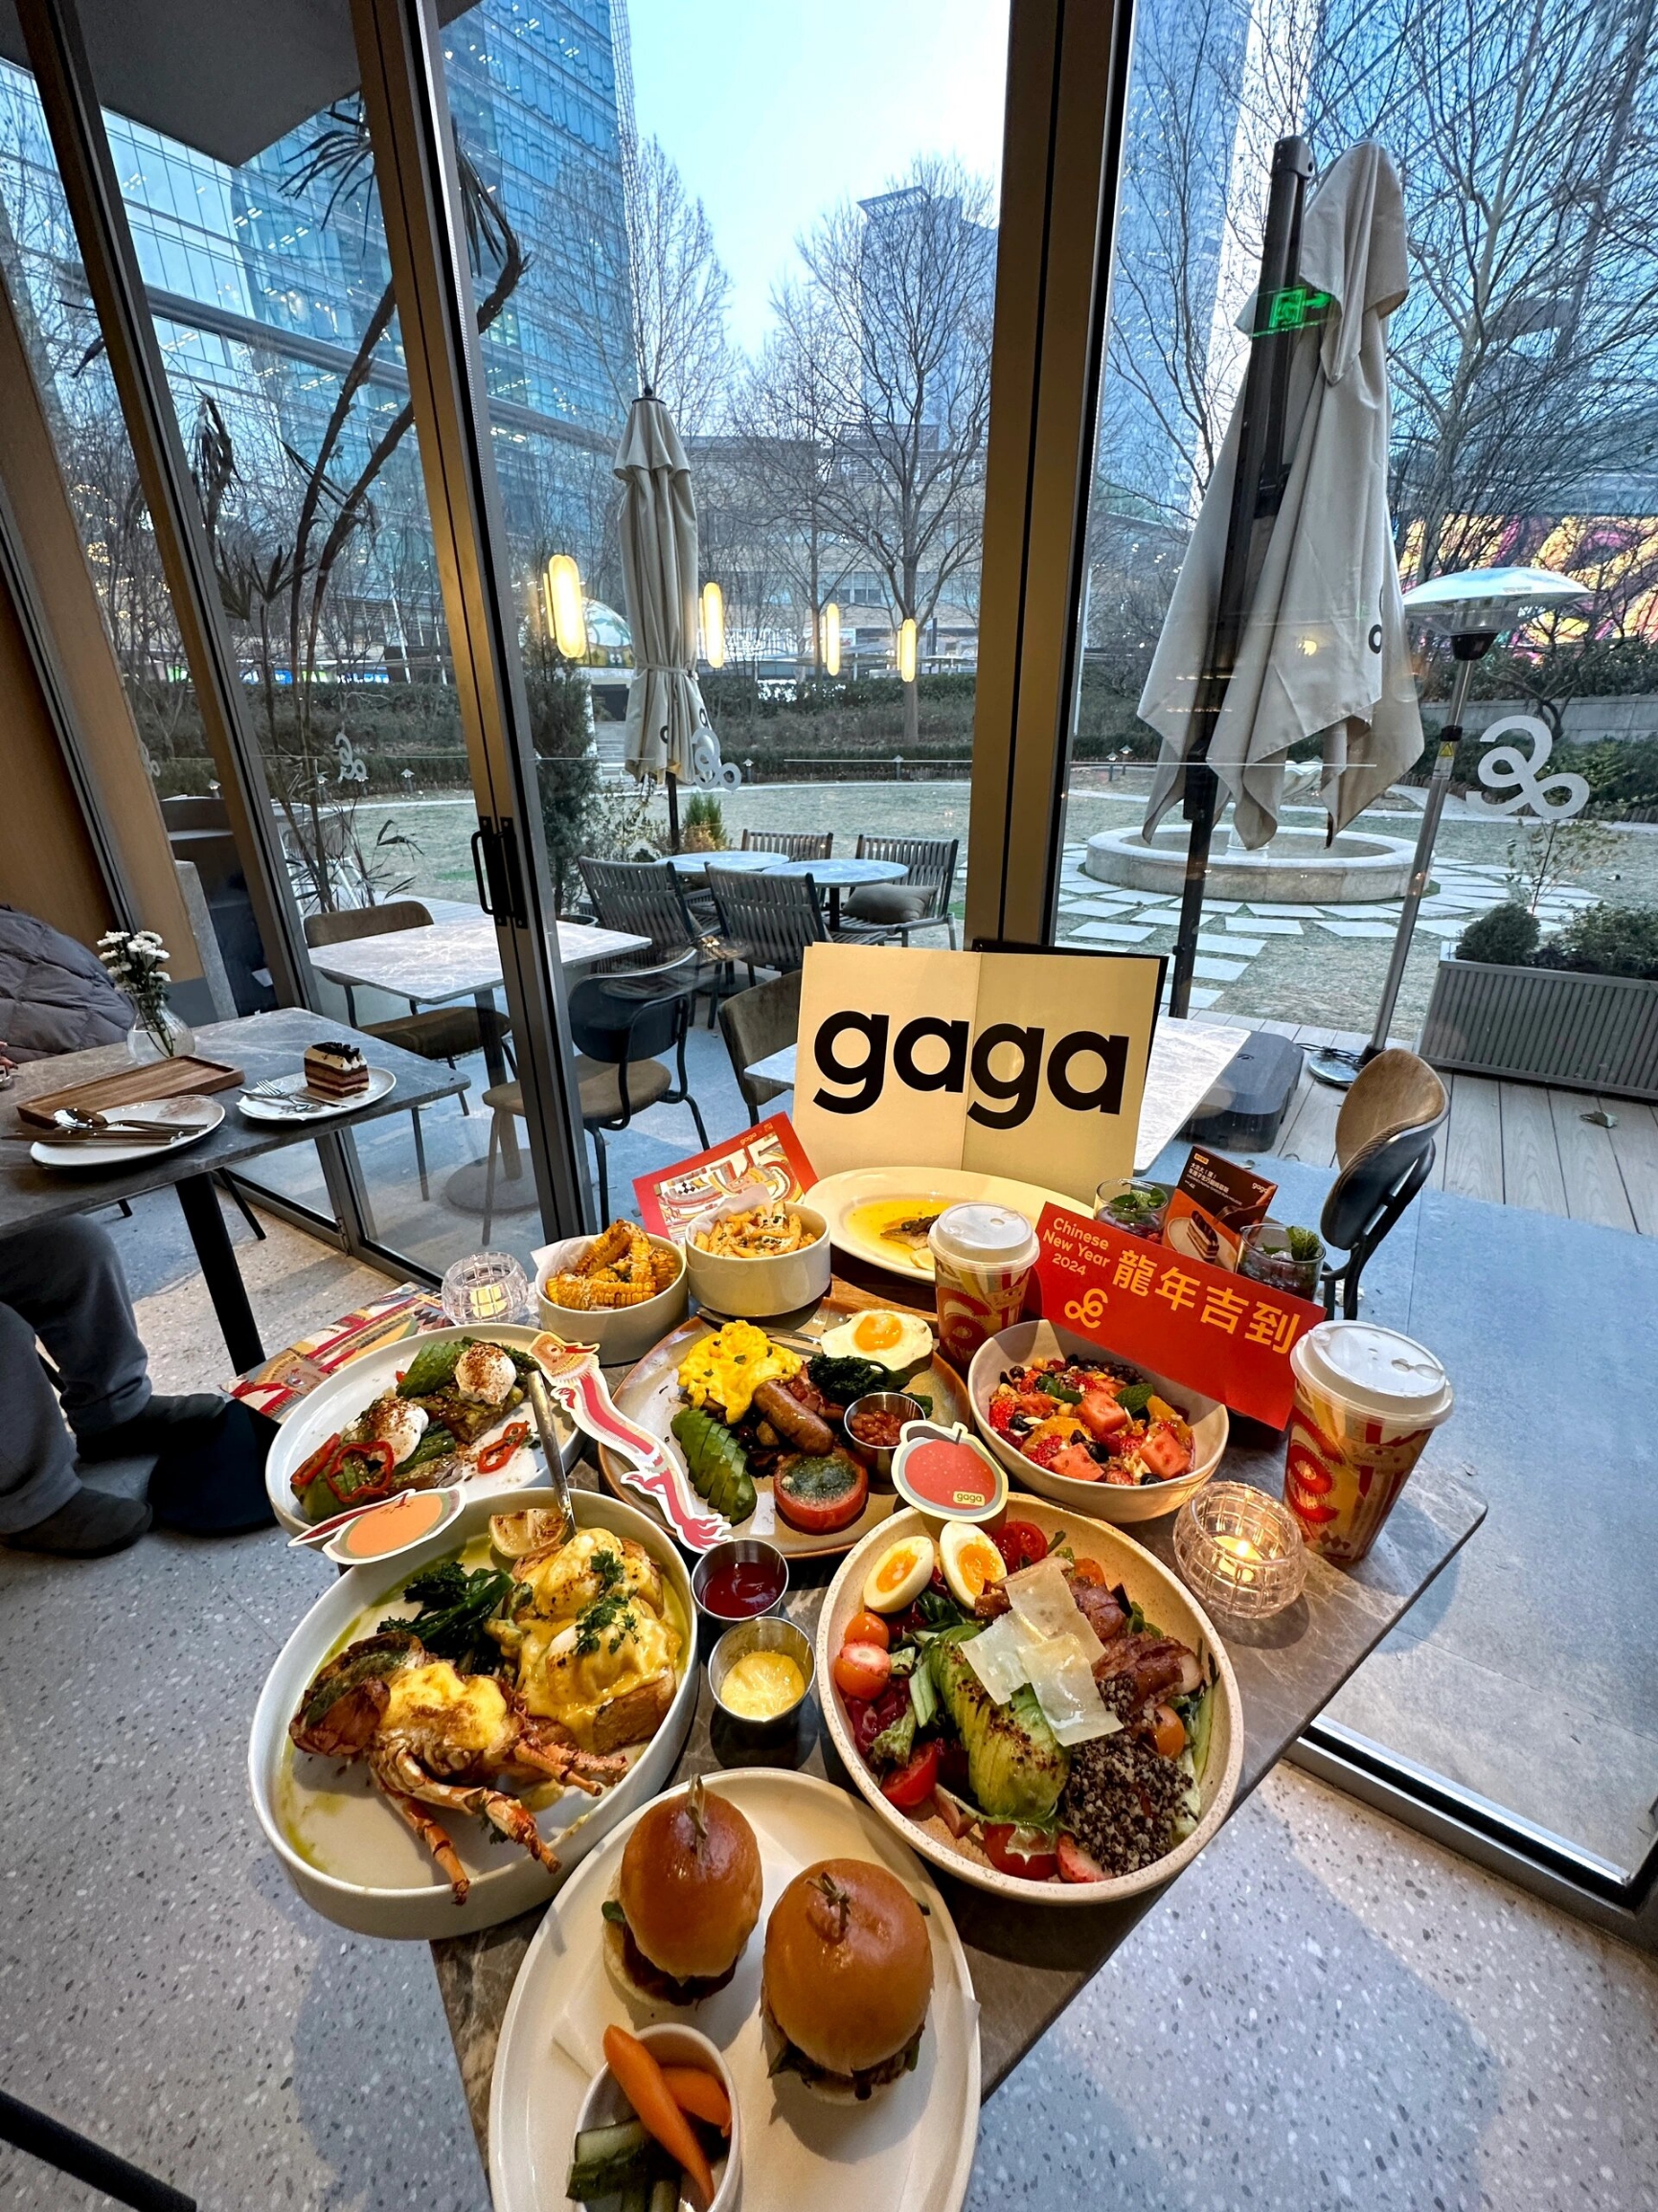 北京的、坐穿地铁14号线来吃的…北京大望路附近…新开的gaga 难得好看又好吃的brunch约会餐厅